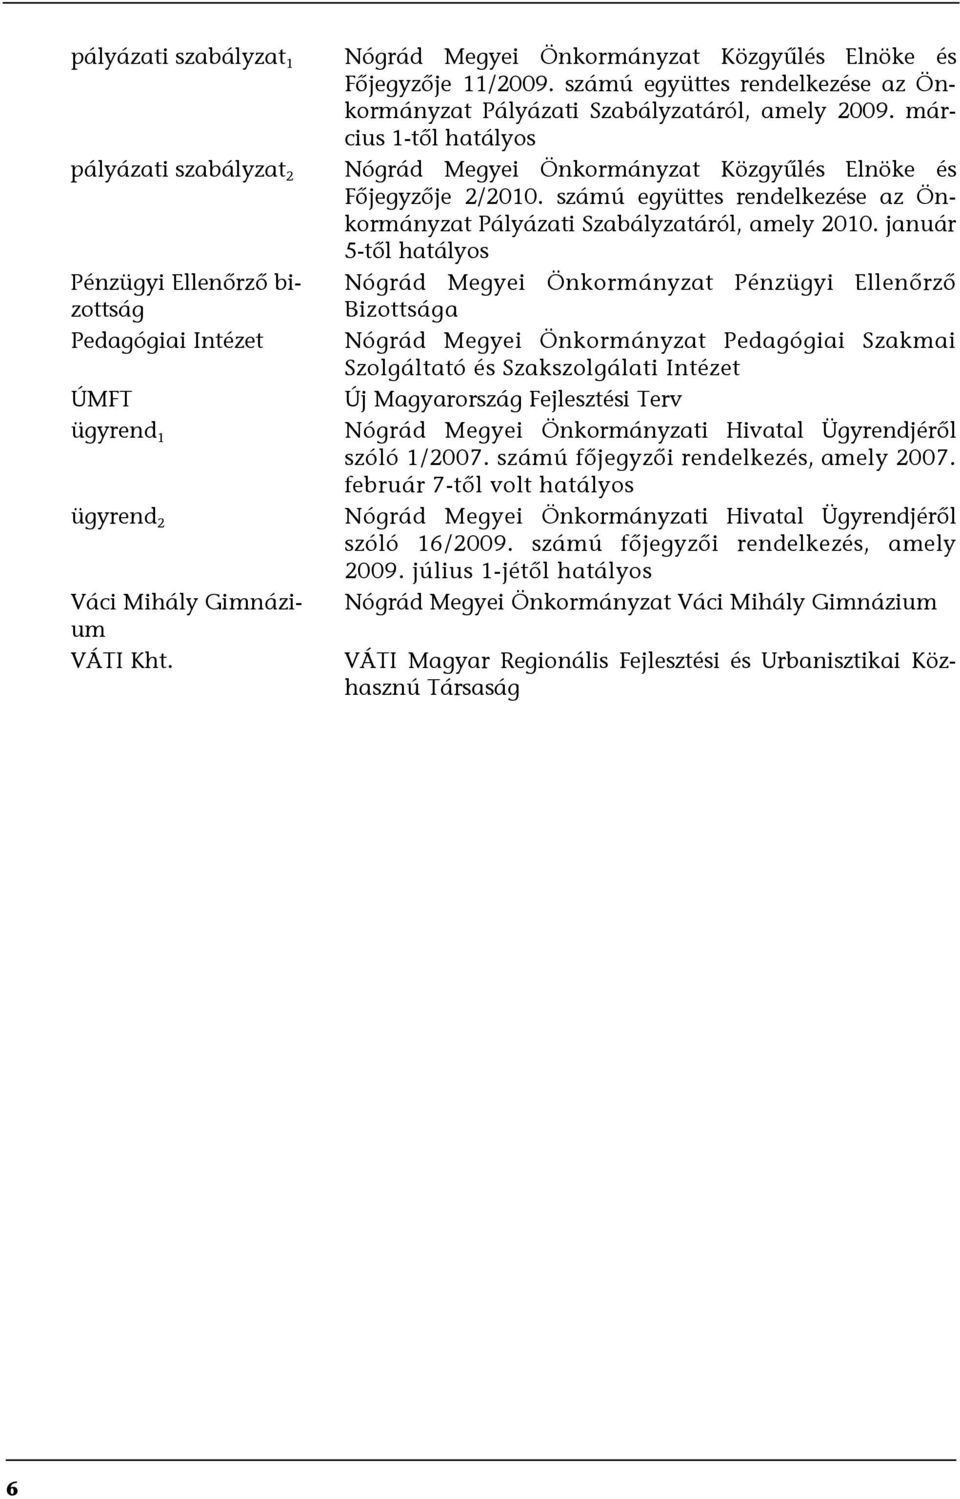 március 1-től hatályos Nógrád Megyei Önkormányzat Közgyűlés Elnöke és Főjegyzője 2/2010. számú együttes rendelkezése az Önkormányzat Pályázati Szabályzatáról, amely 2010.